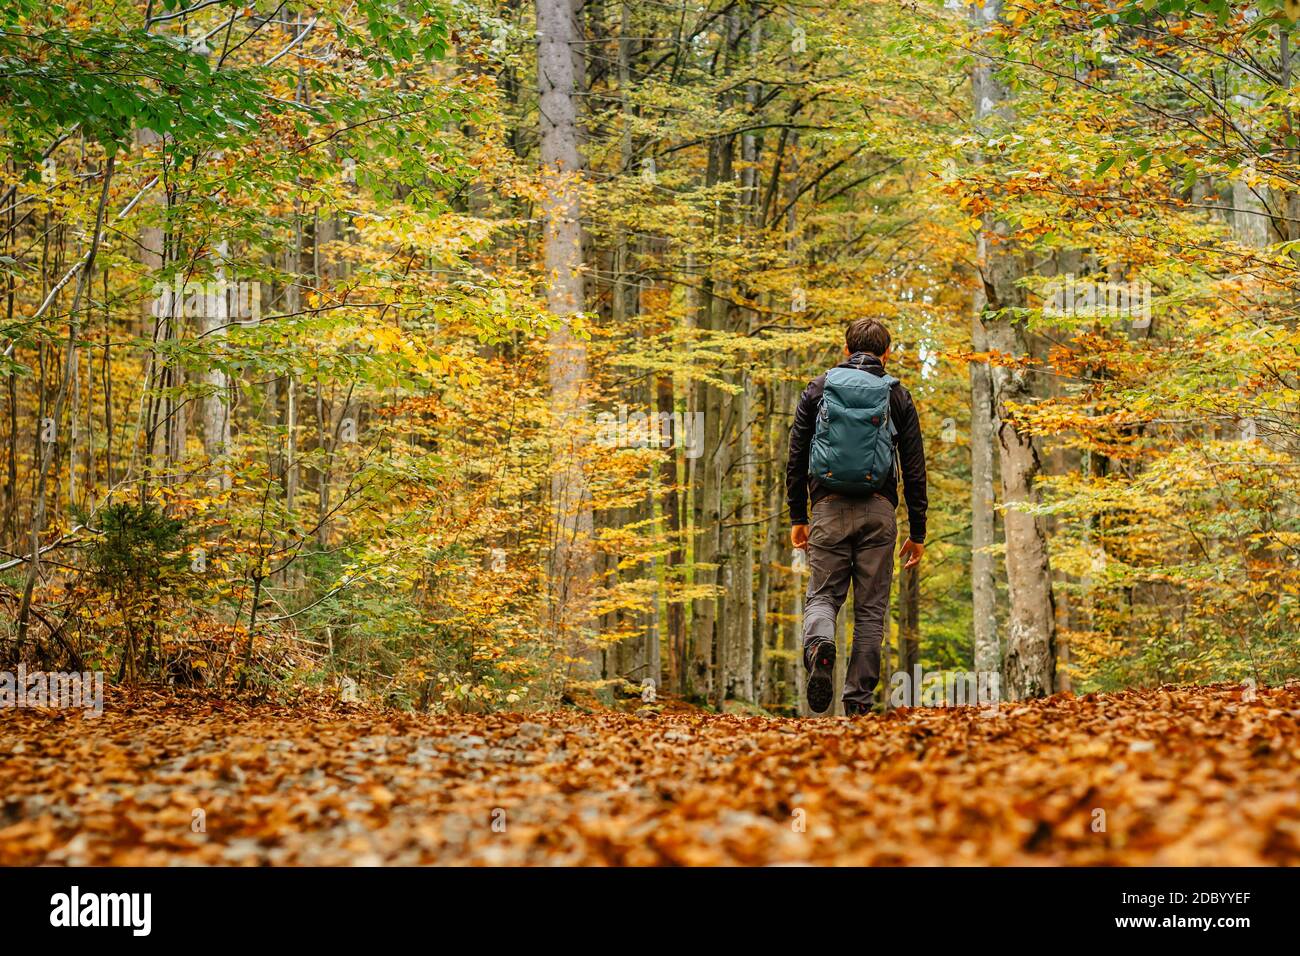 Uomo solitario che cammina in una foresta path.Autumn season.solo sport all'aperto. Distanza sociale. Escursionismo attivo zaino in spalla nella natura colorata. Calda giornata di sole Foto Stock